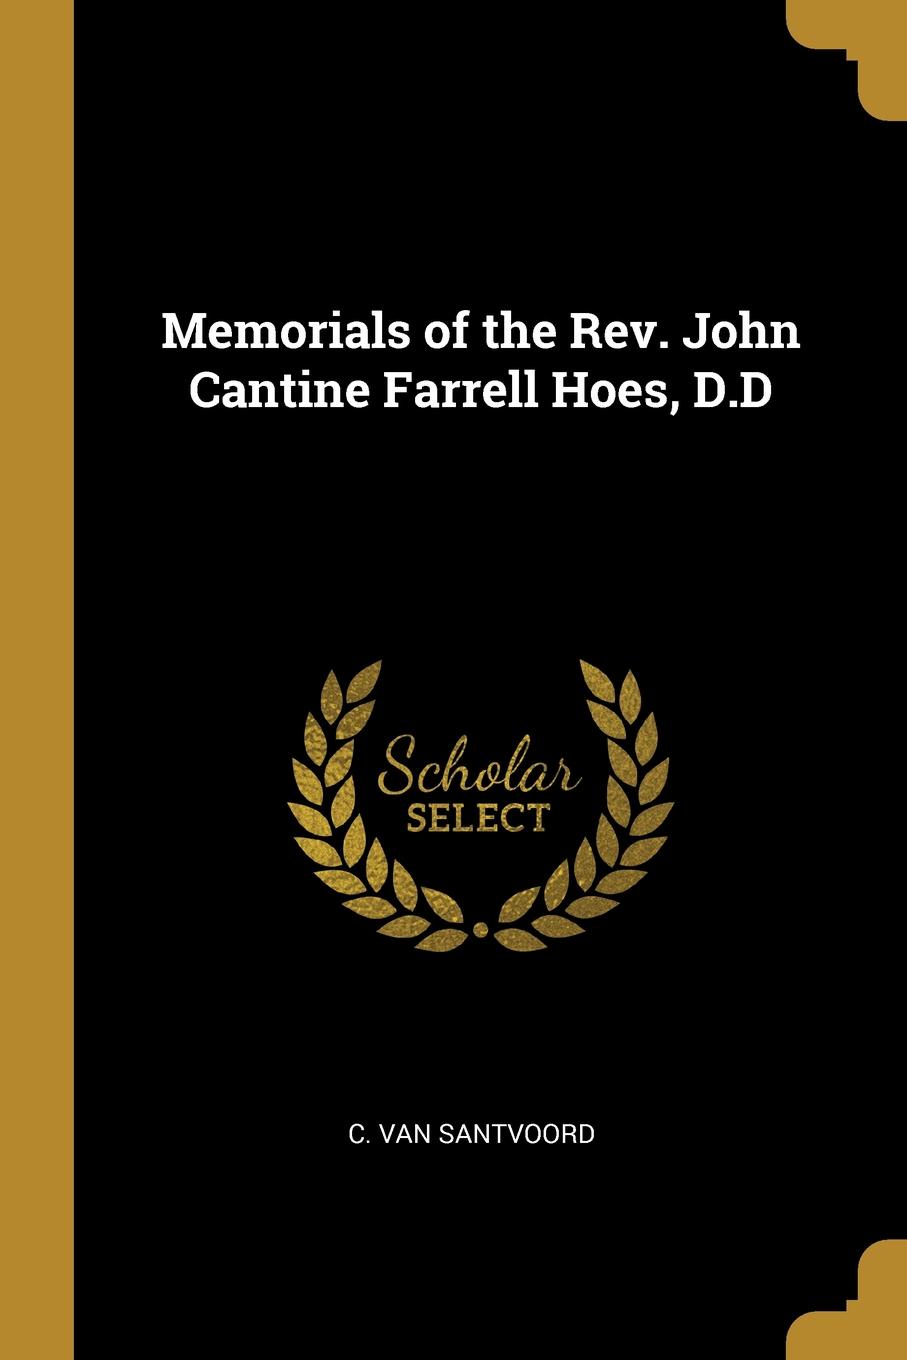 Memorials of the Rev. John Cantine Farrell Hoes, D.D